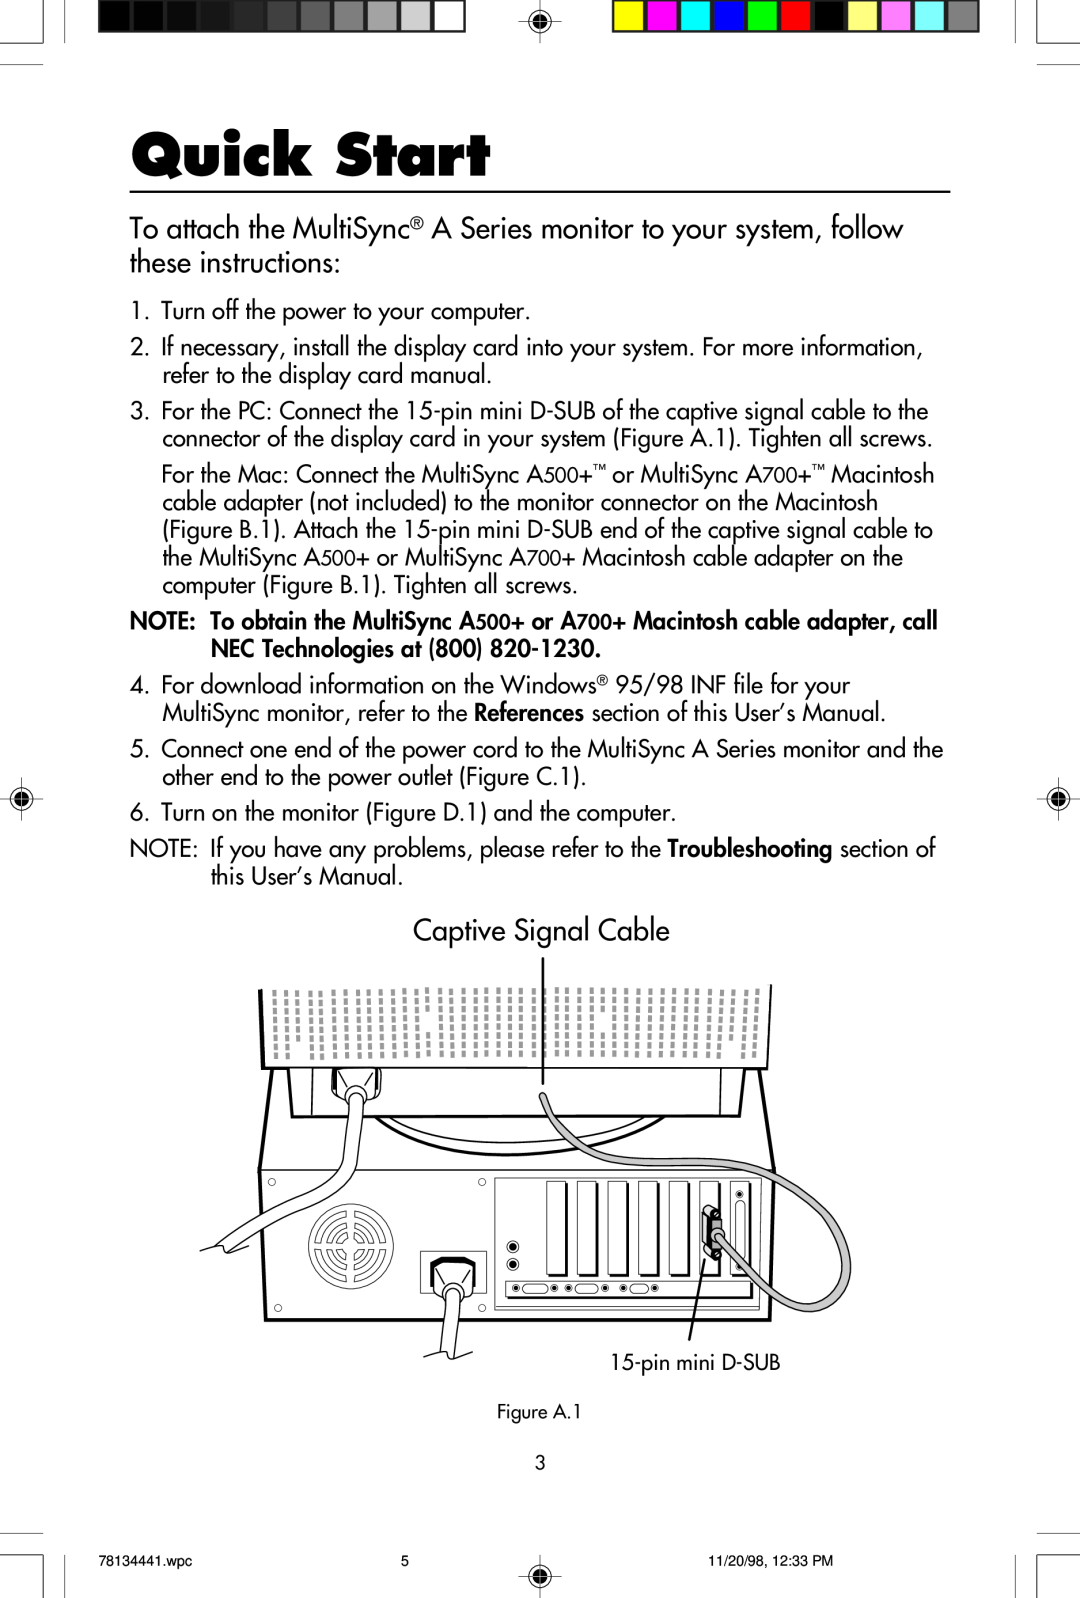 NEC A700+TM, A500+TM user manual Quick Start, Captive Signal Cable 